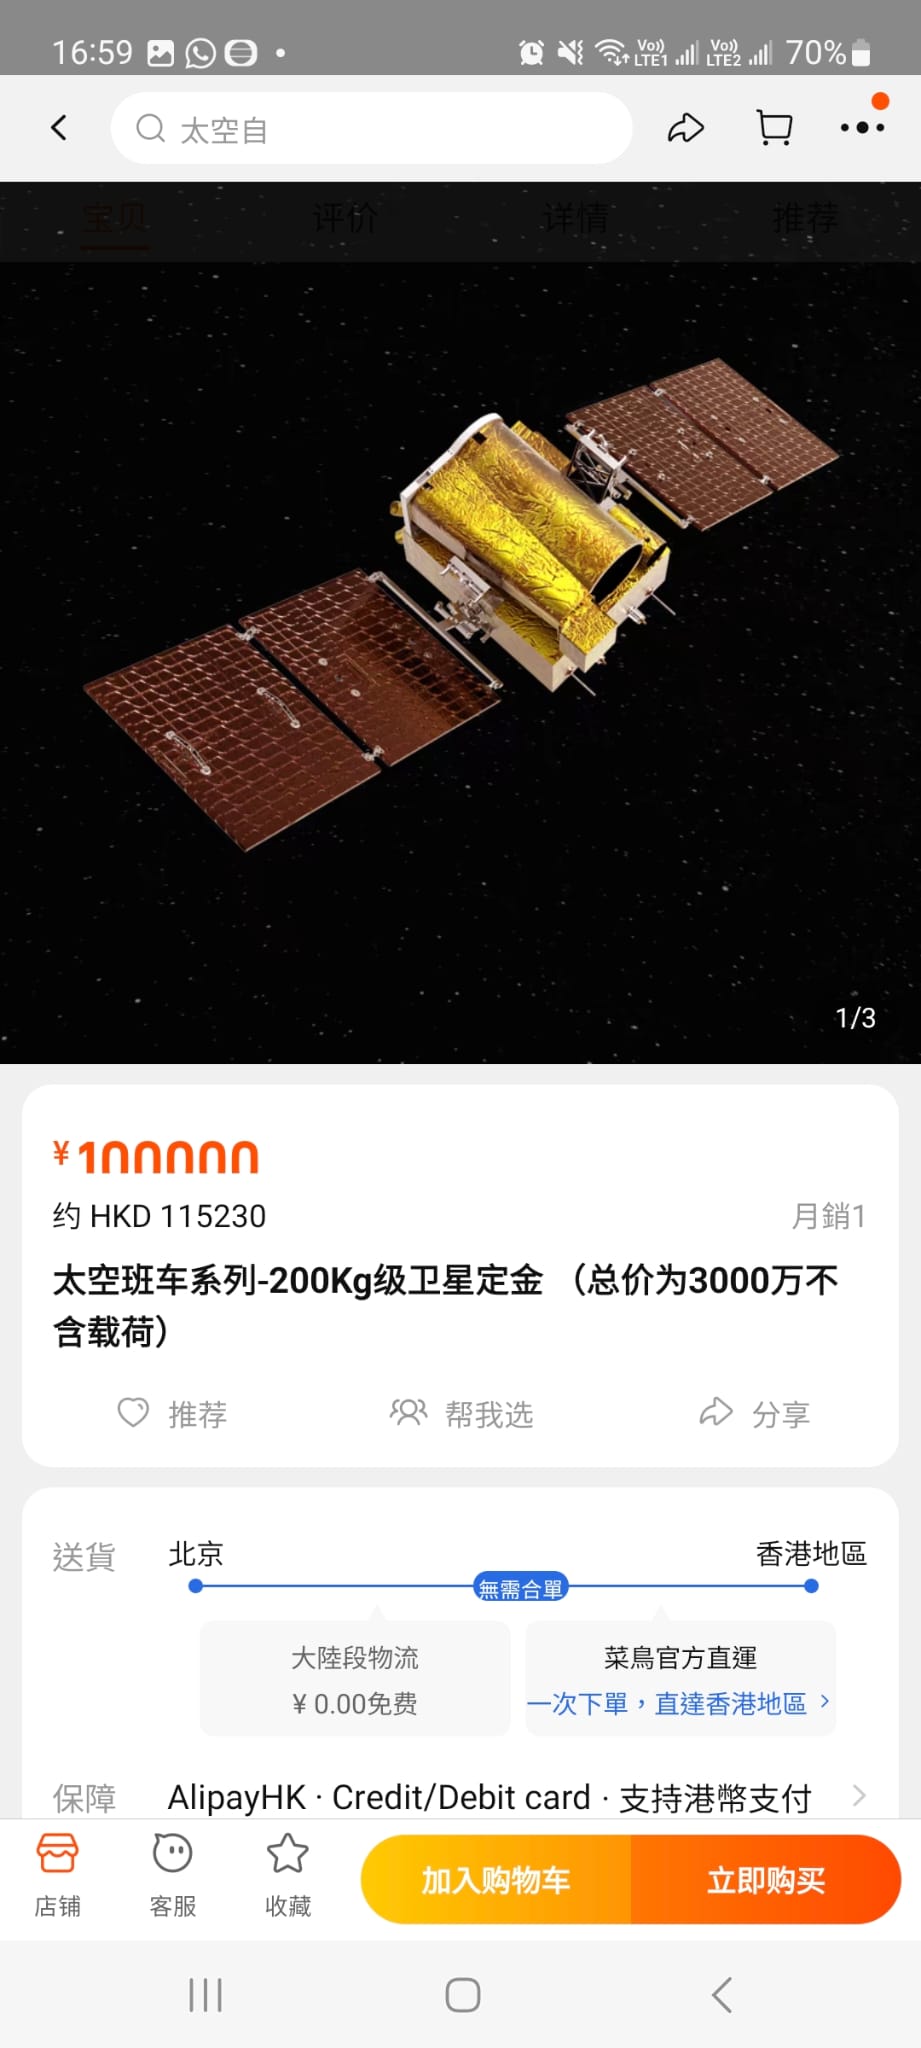 衛星定金(總價為3000萬不含載荷)。